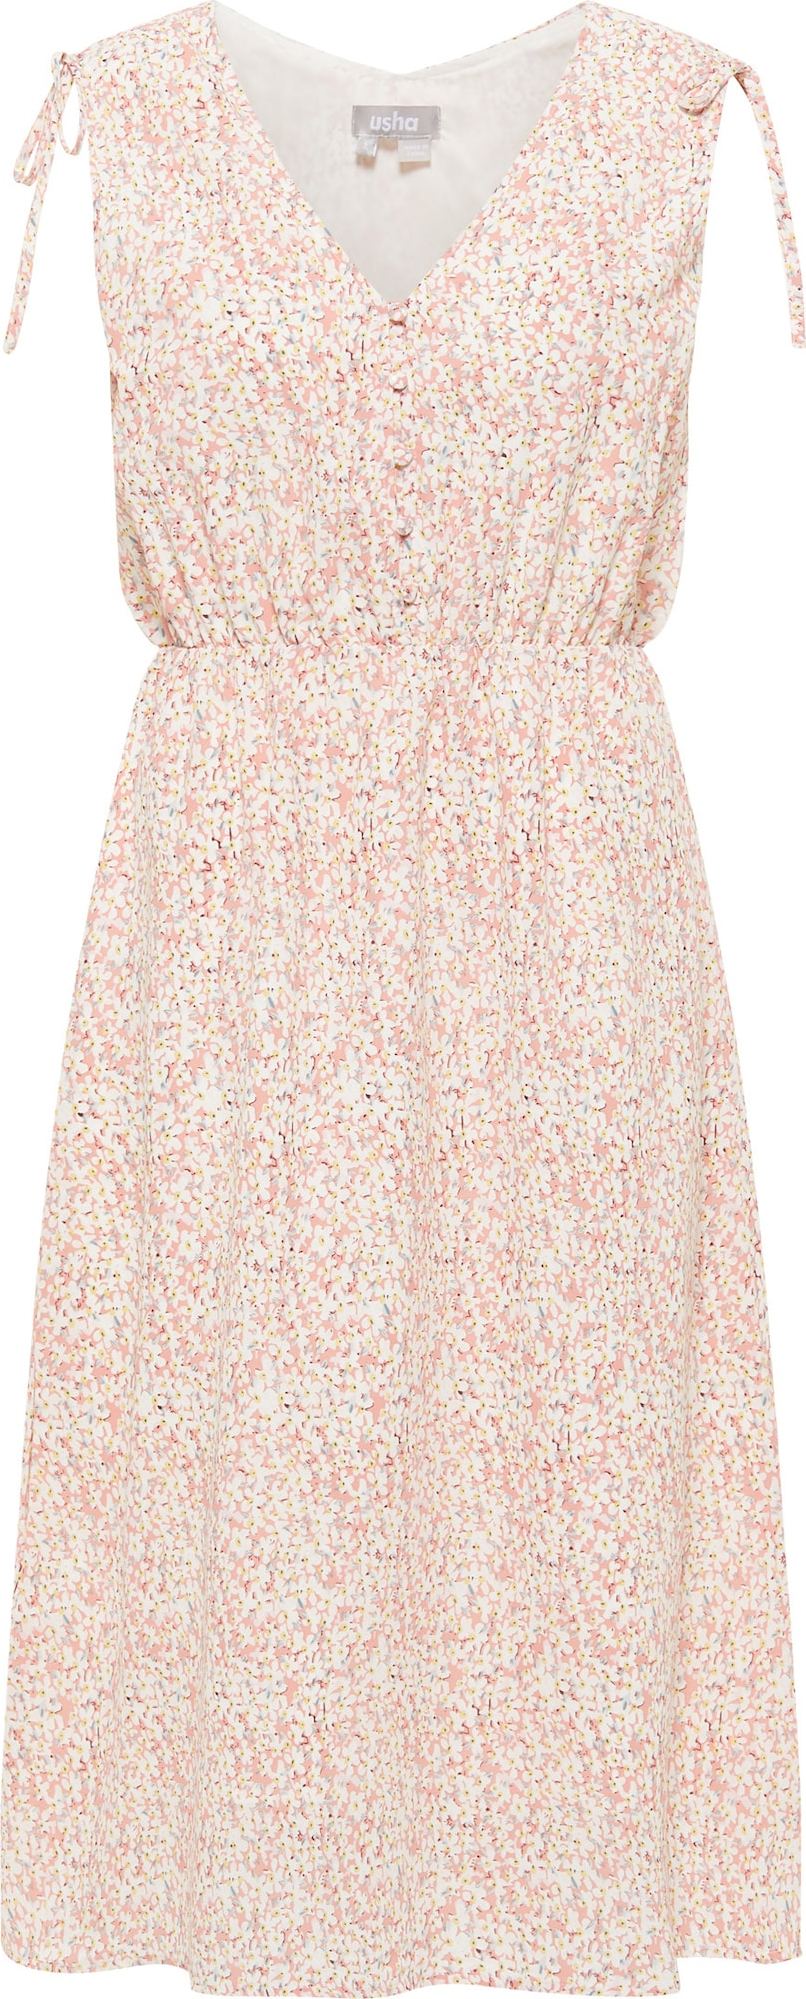 Usha Letní šaty mix barev / růžová